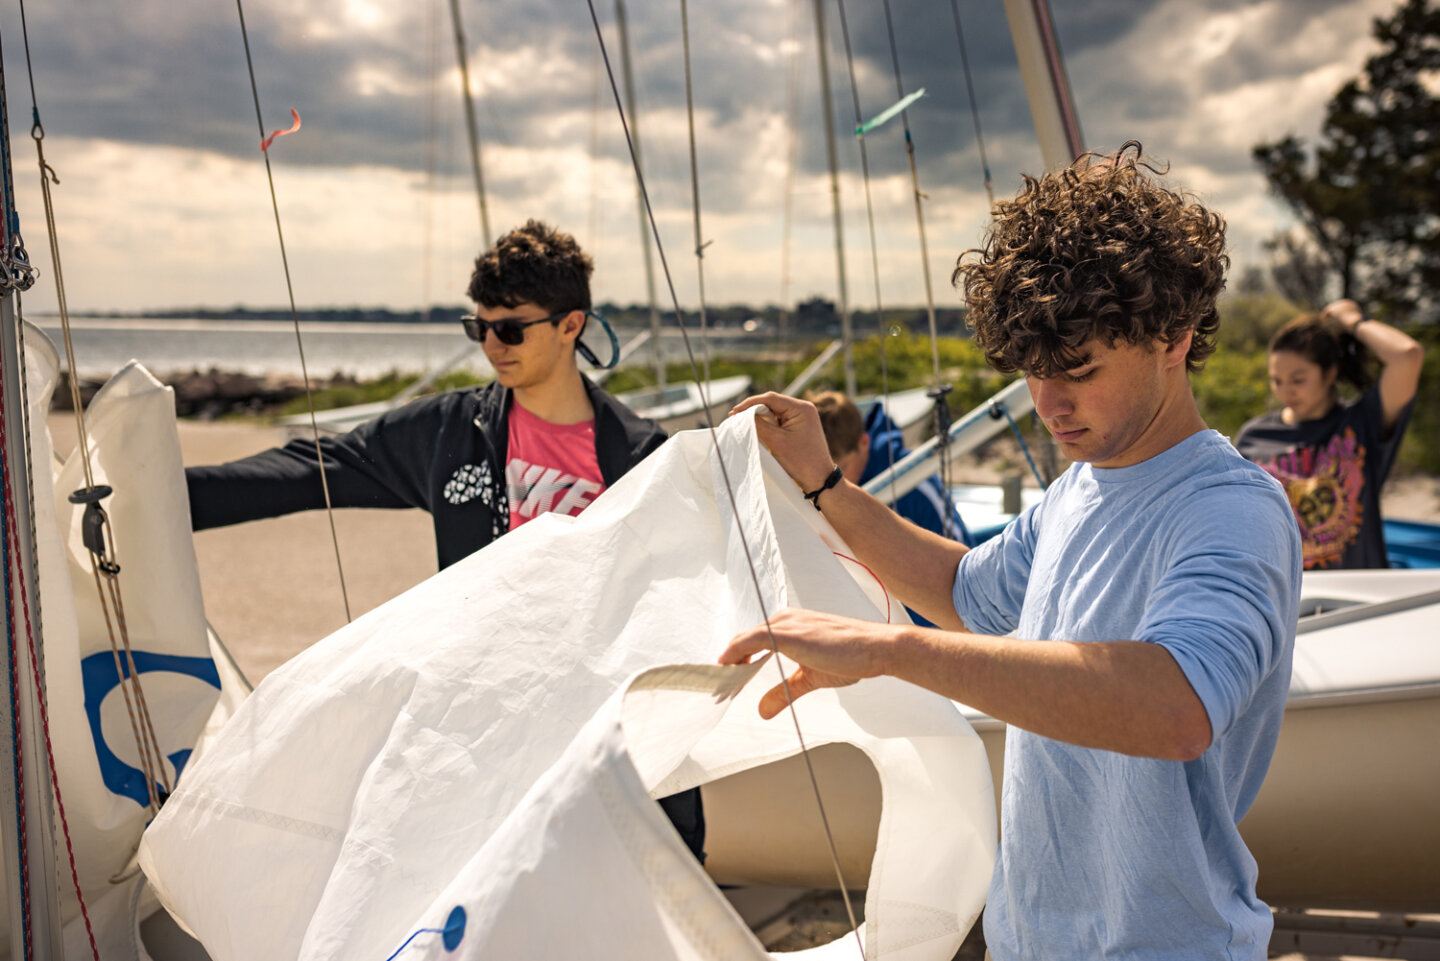 Williams sailing students unfurling sail at the marina